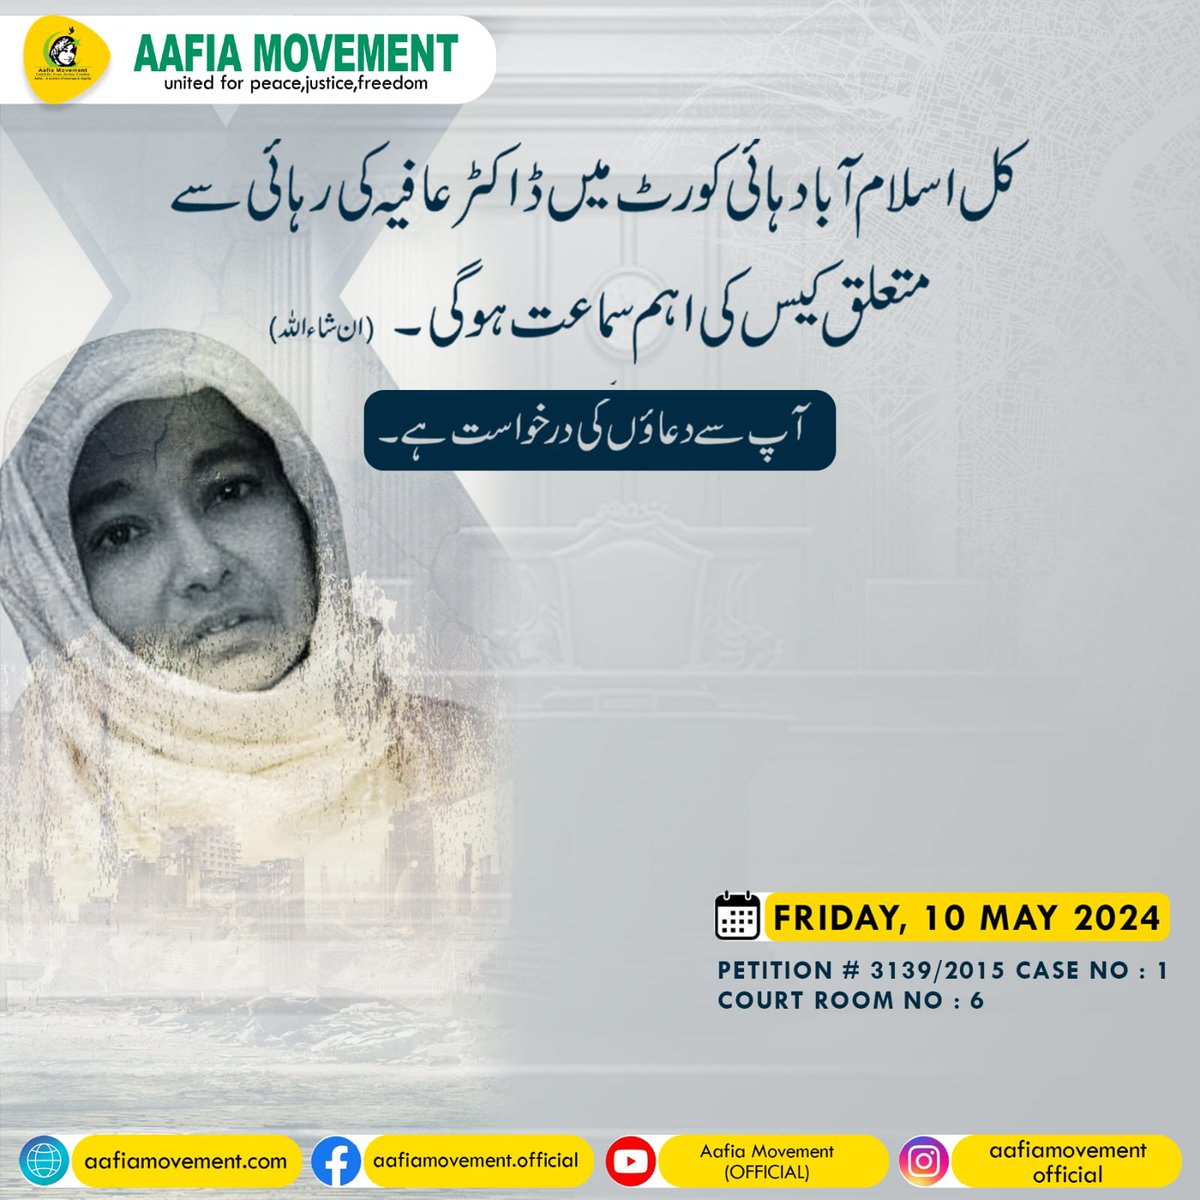 کل اسلام آباد ہائی کورٹ میں ڈاکٹر عافیہ کی رہائی سے متعلق کیس کی اہم سماعت ہو گی۔ ان شا ءاللہ
Team Aafia Official 
@TeamAafiaOrg_
#Reunion_FMCcarswell
#HonourBeforeLife
#LetSistersHug
#ReleaseAafia #IAmAafia #AafiaSiddiqui #FreeDrAafia  #humanity #TeamAafia  #HumanRights